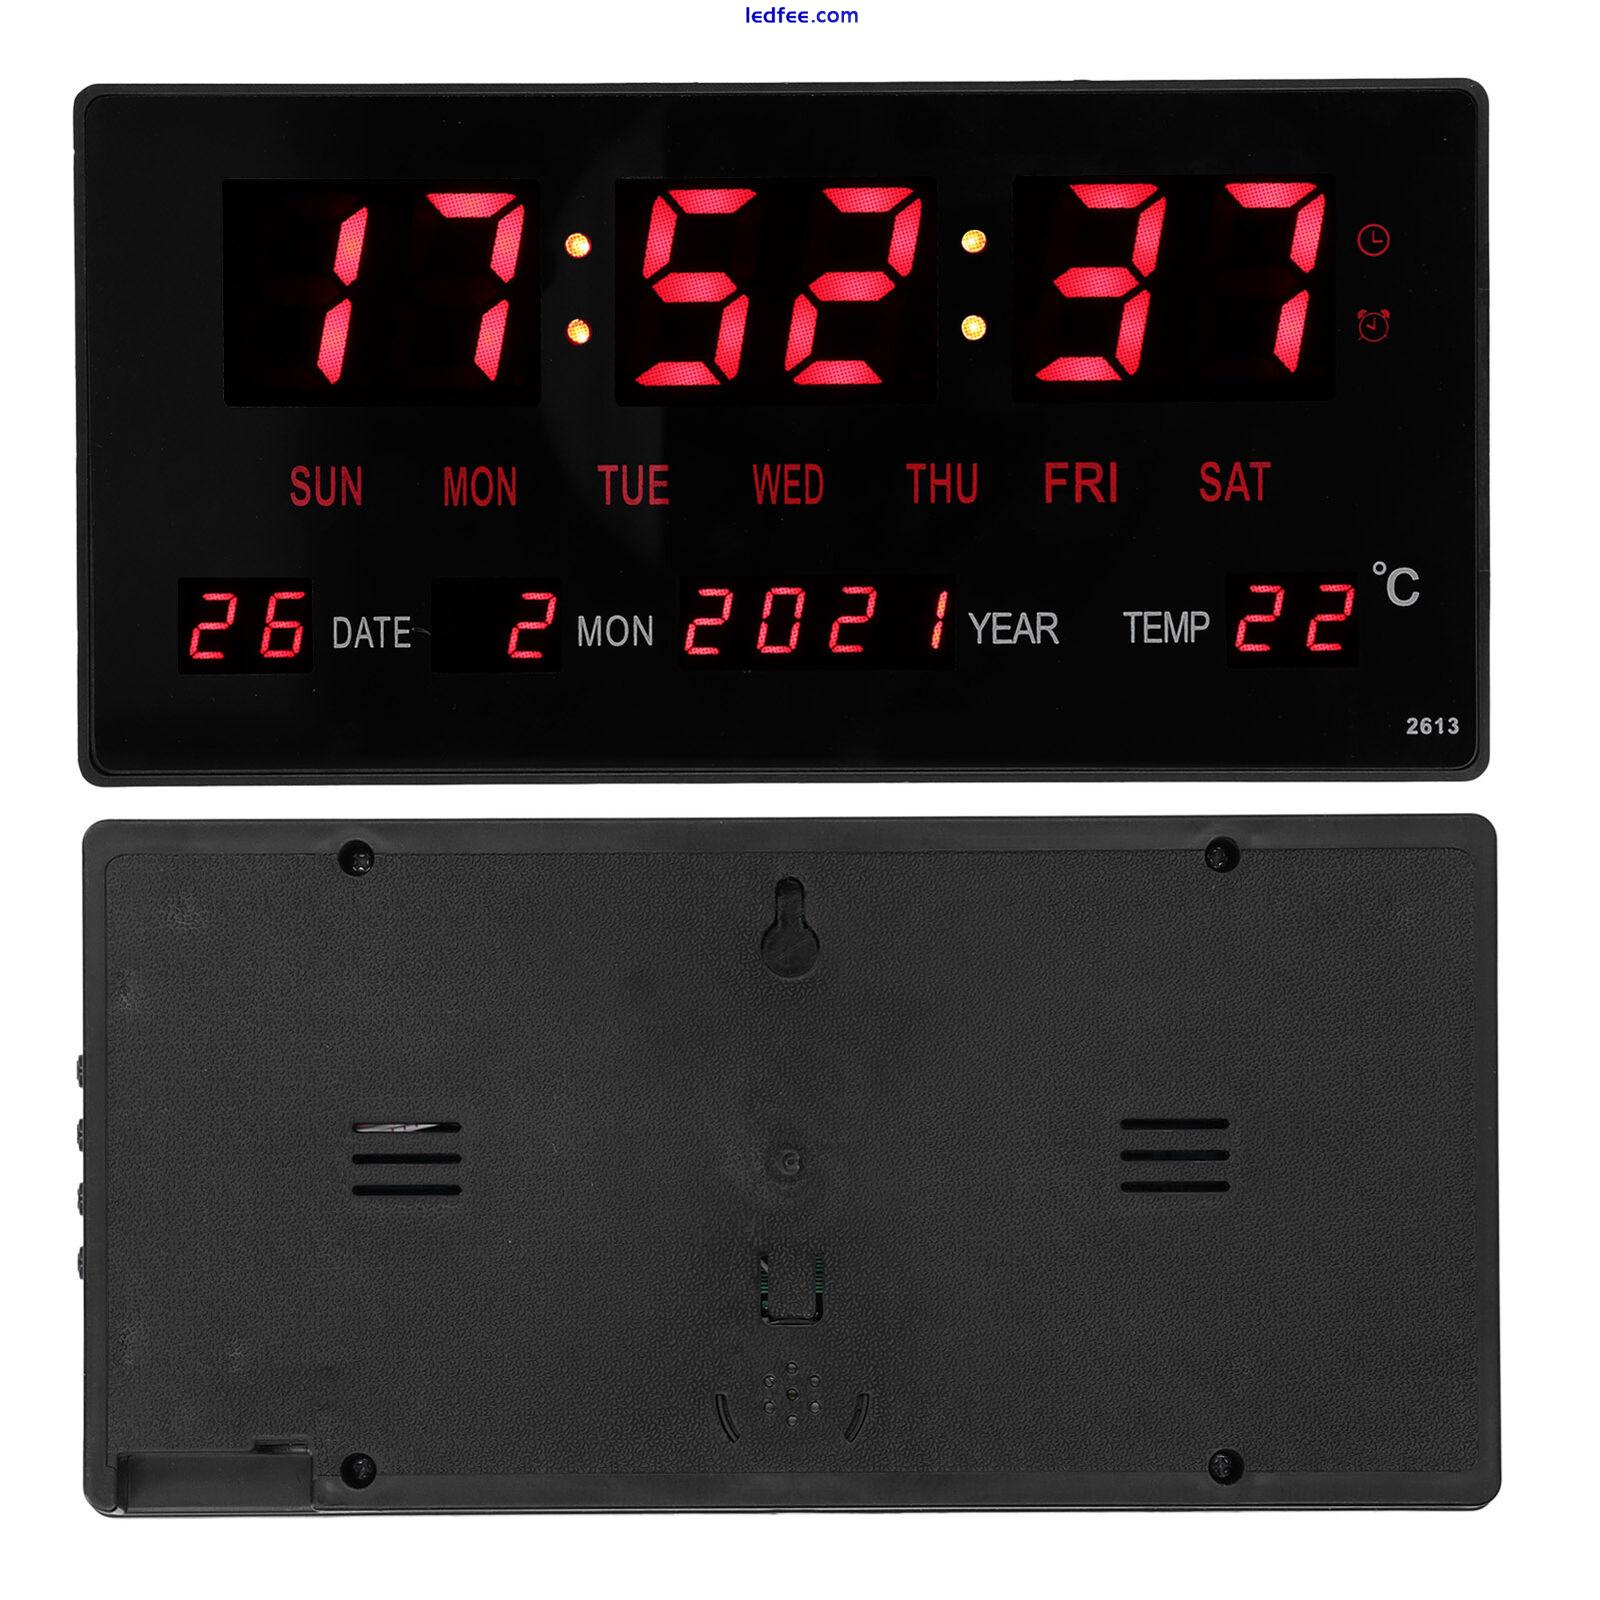 LED Digital Clock Large Display Electronic Calendar Clock With Indoor Temp RMM 5 